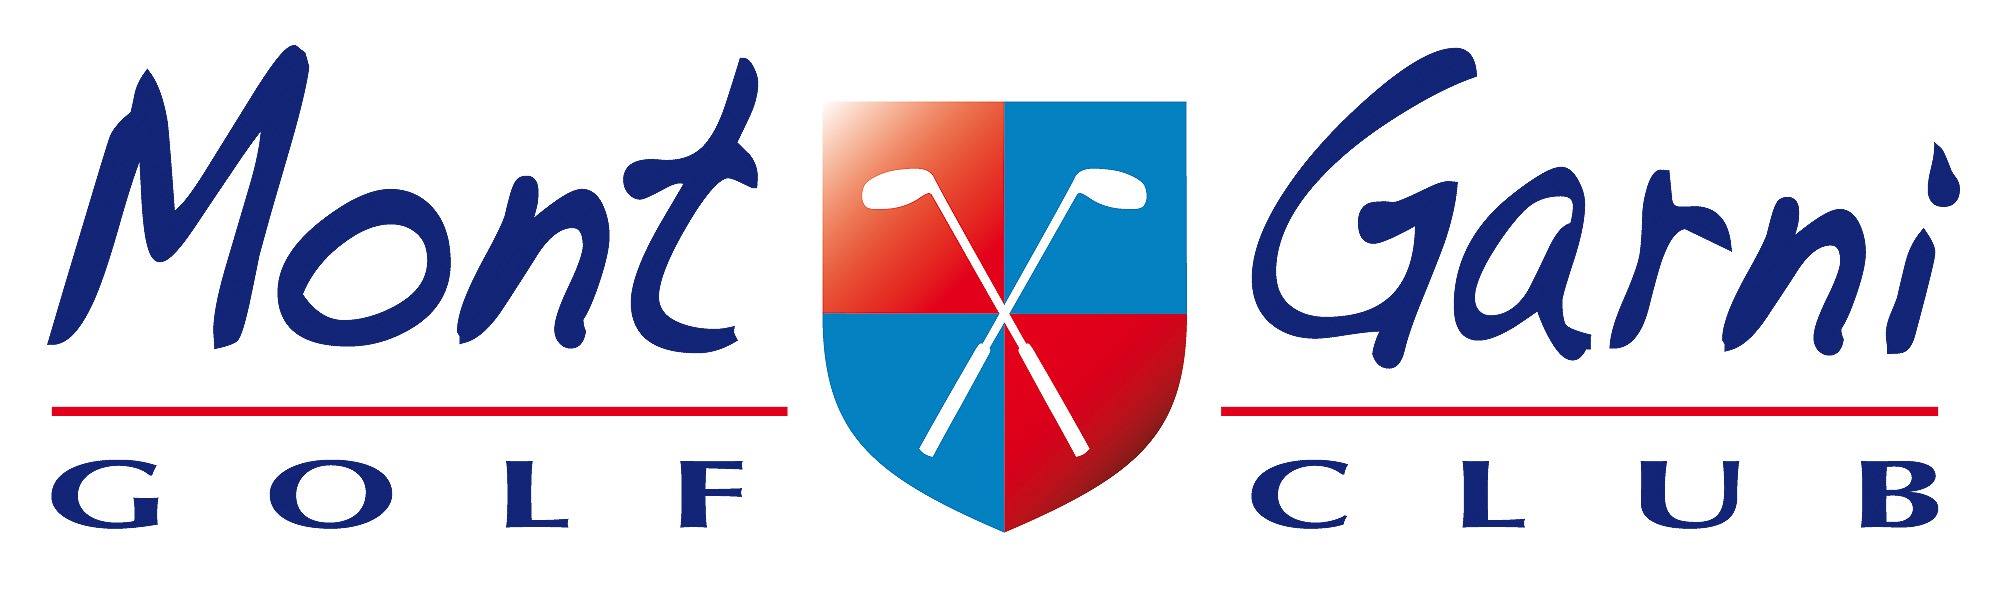 Logo Mont Garni Golf Club, parcours 18 trous à Baudour en Belgique, Resonance Golf Collection